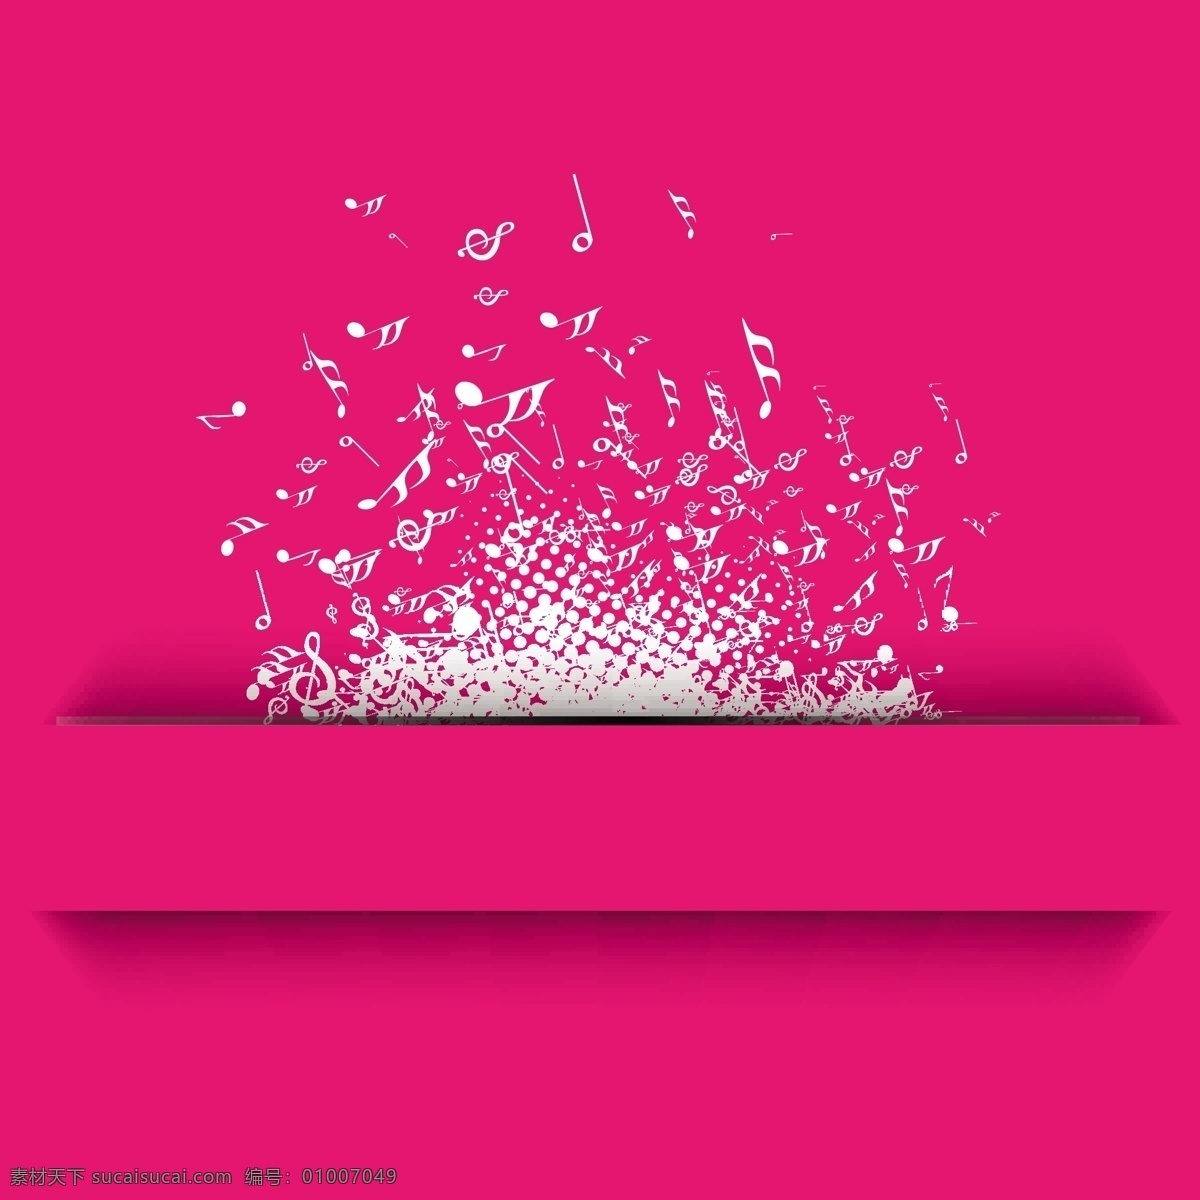 白色 音符 背景 矢量 模板下载 音乐 粉色 符号 底纹背景 影音娱乐 生活百科 矢量素材